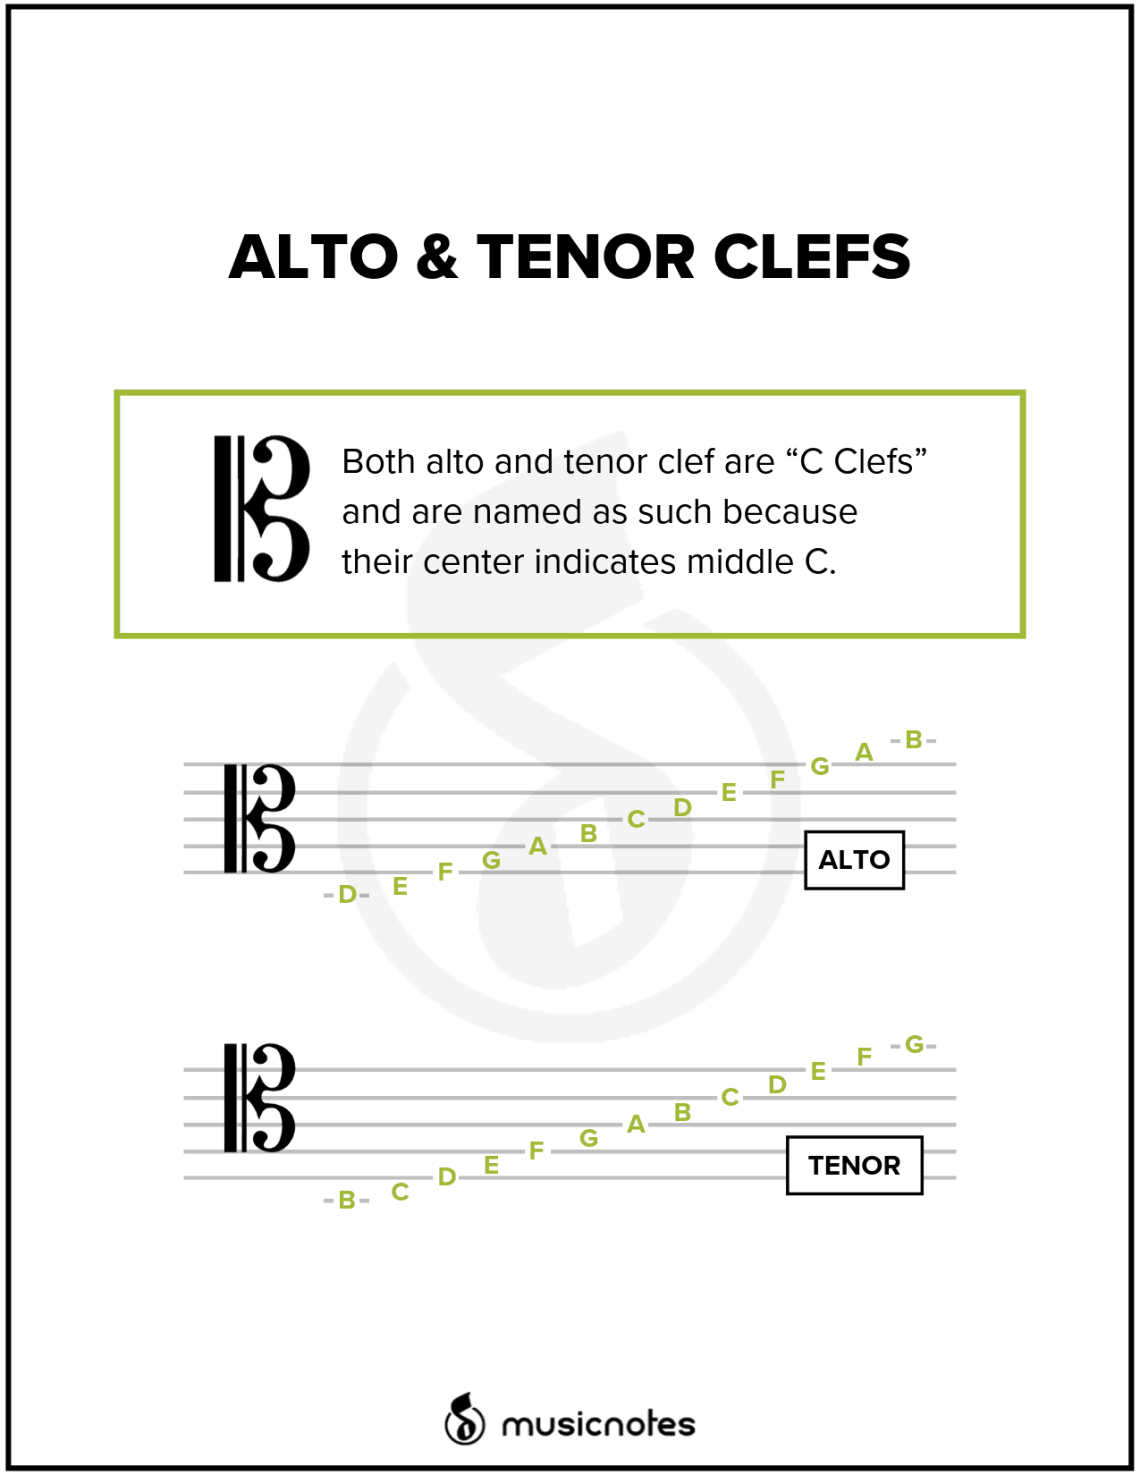 Альто және тенор кілтінің нота позициялары